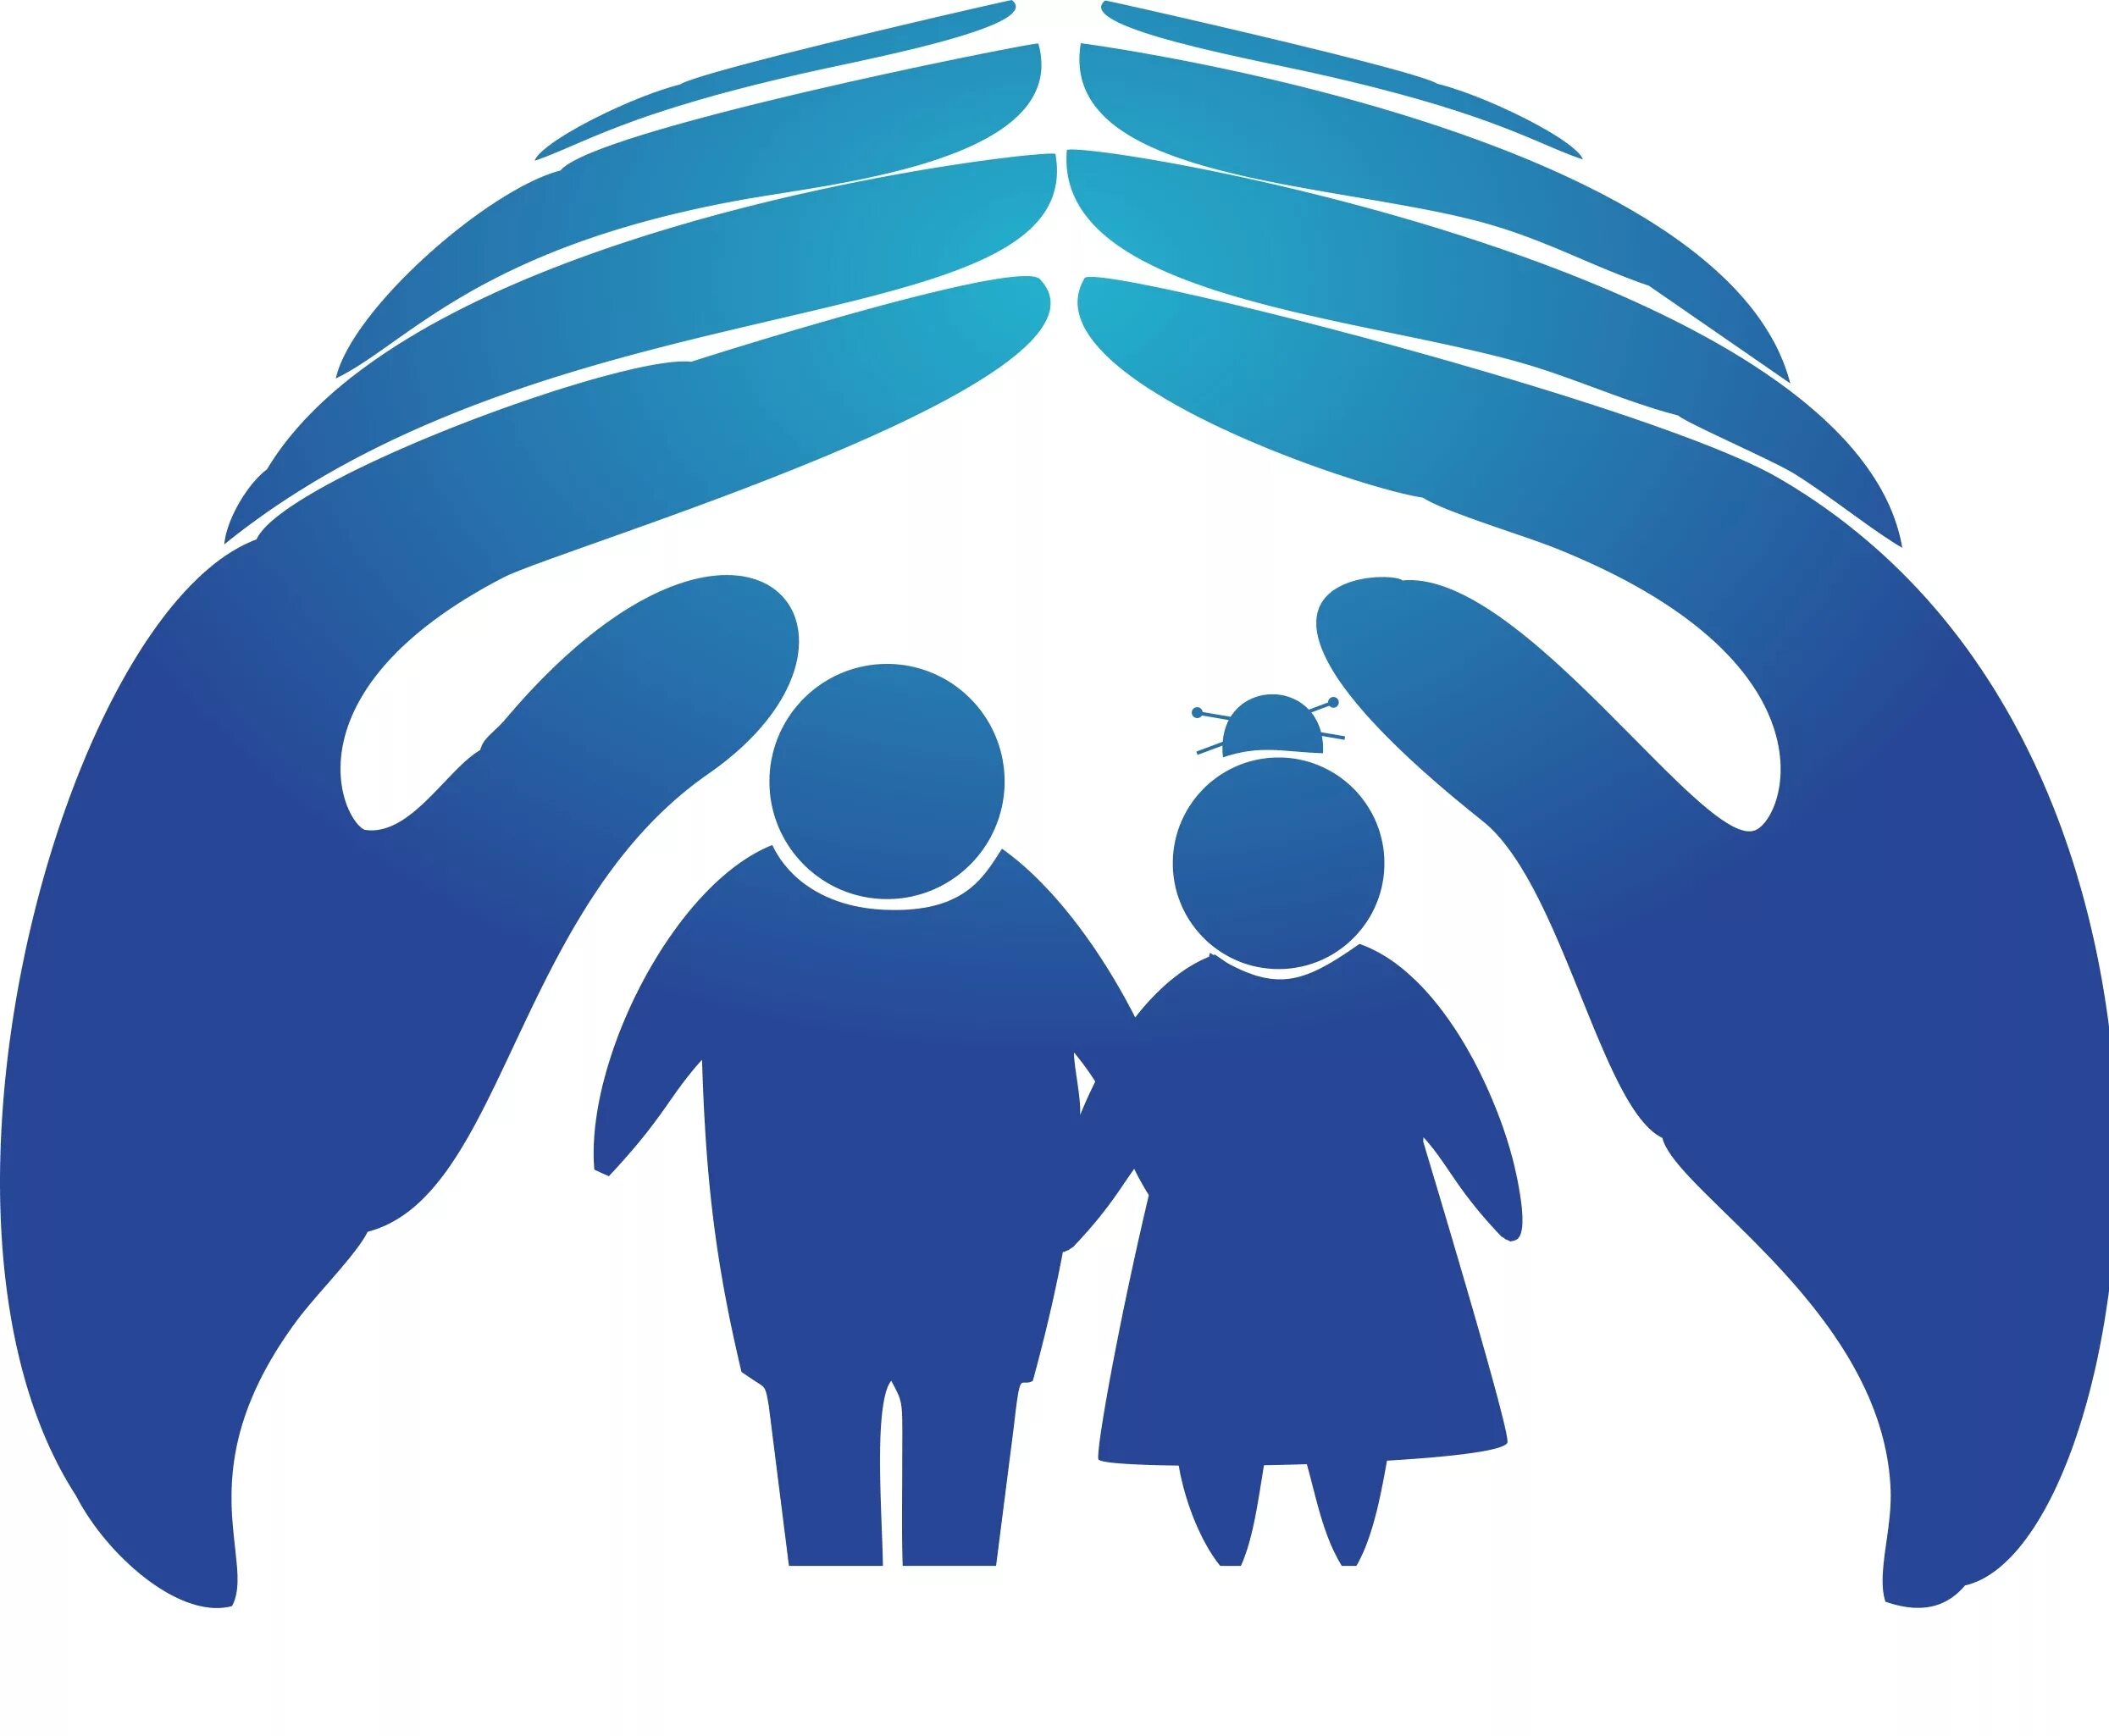 Центр защиты поддержки населения. Социальная защита. Символ социальной защиты. Логотип социальной защиты. Эмблема социальной работы.